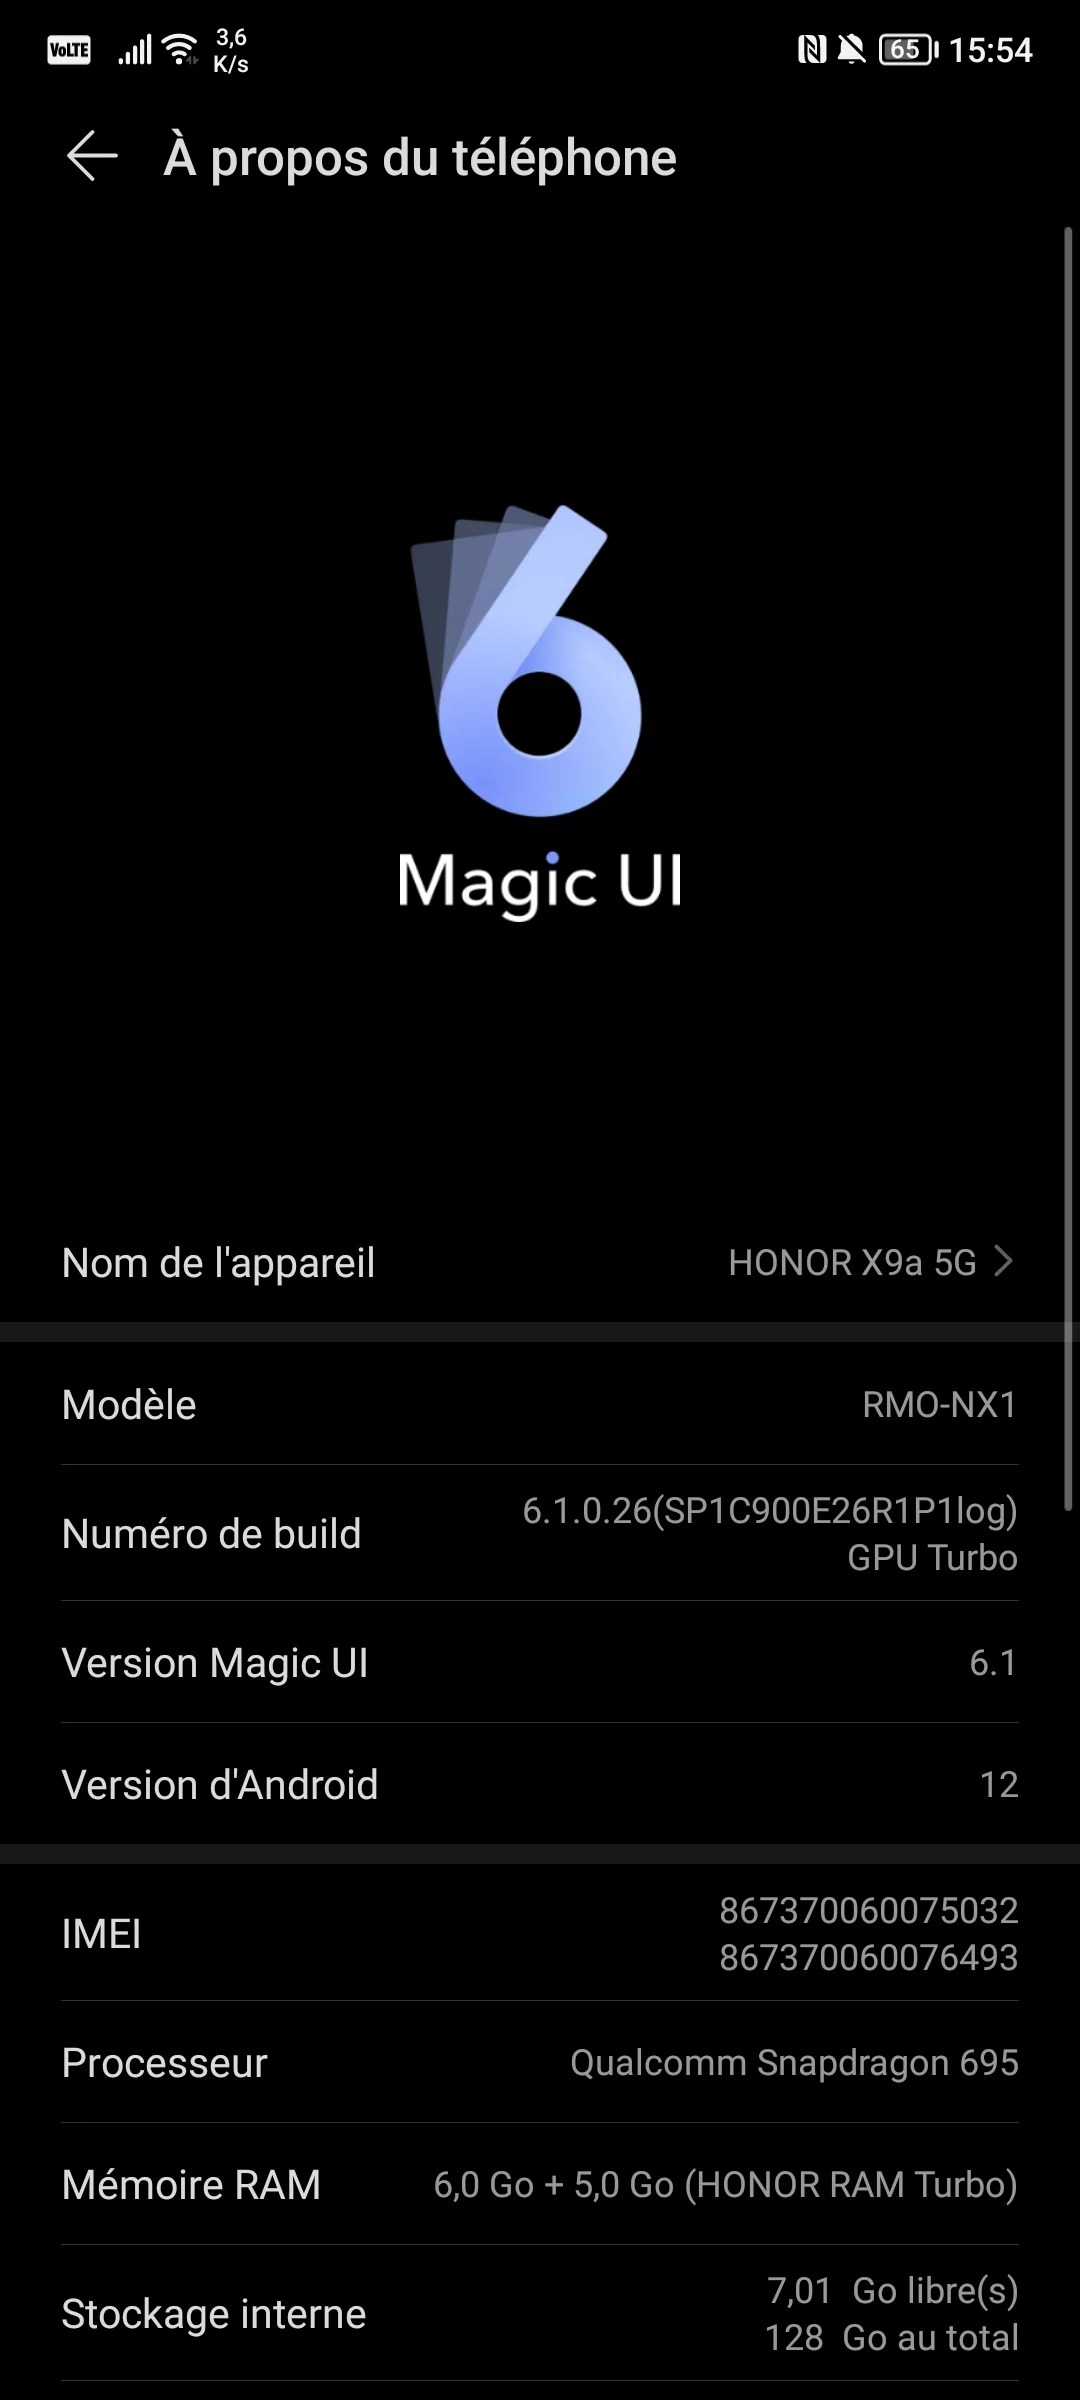 Magic UI 6.1 sur le Honor Magic5 Lite // Source : Frandroid